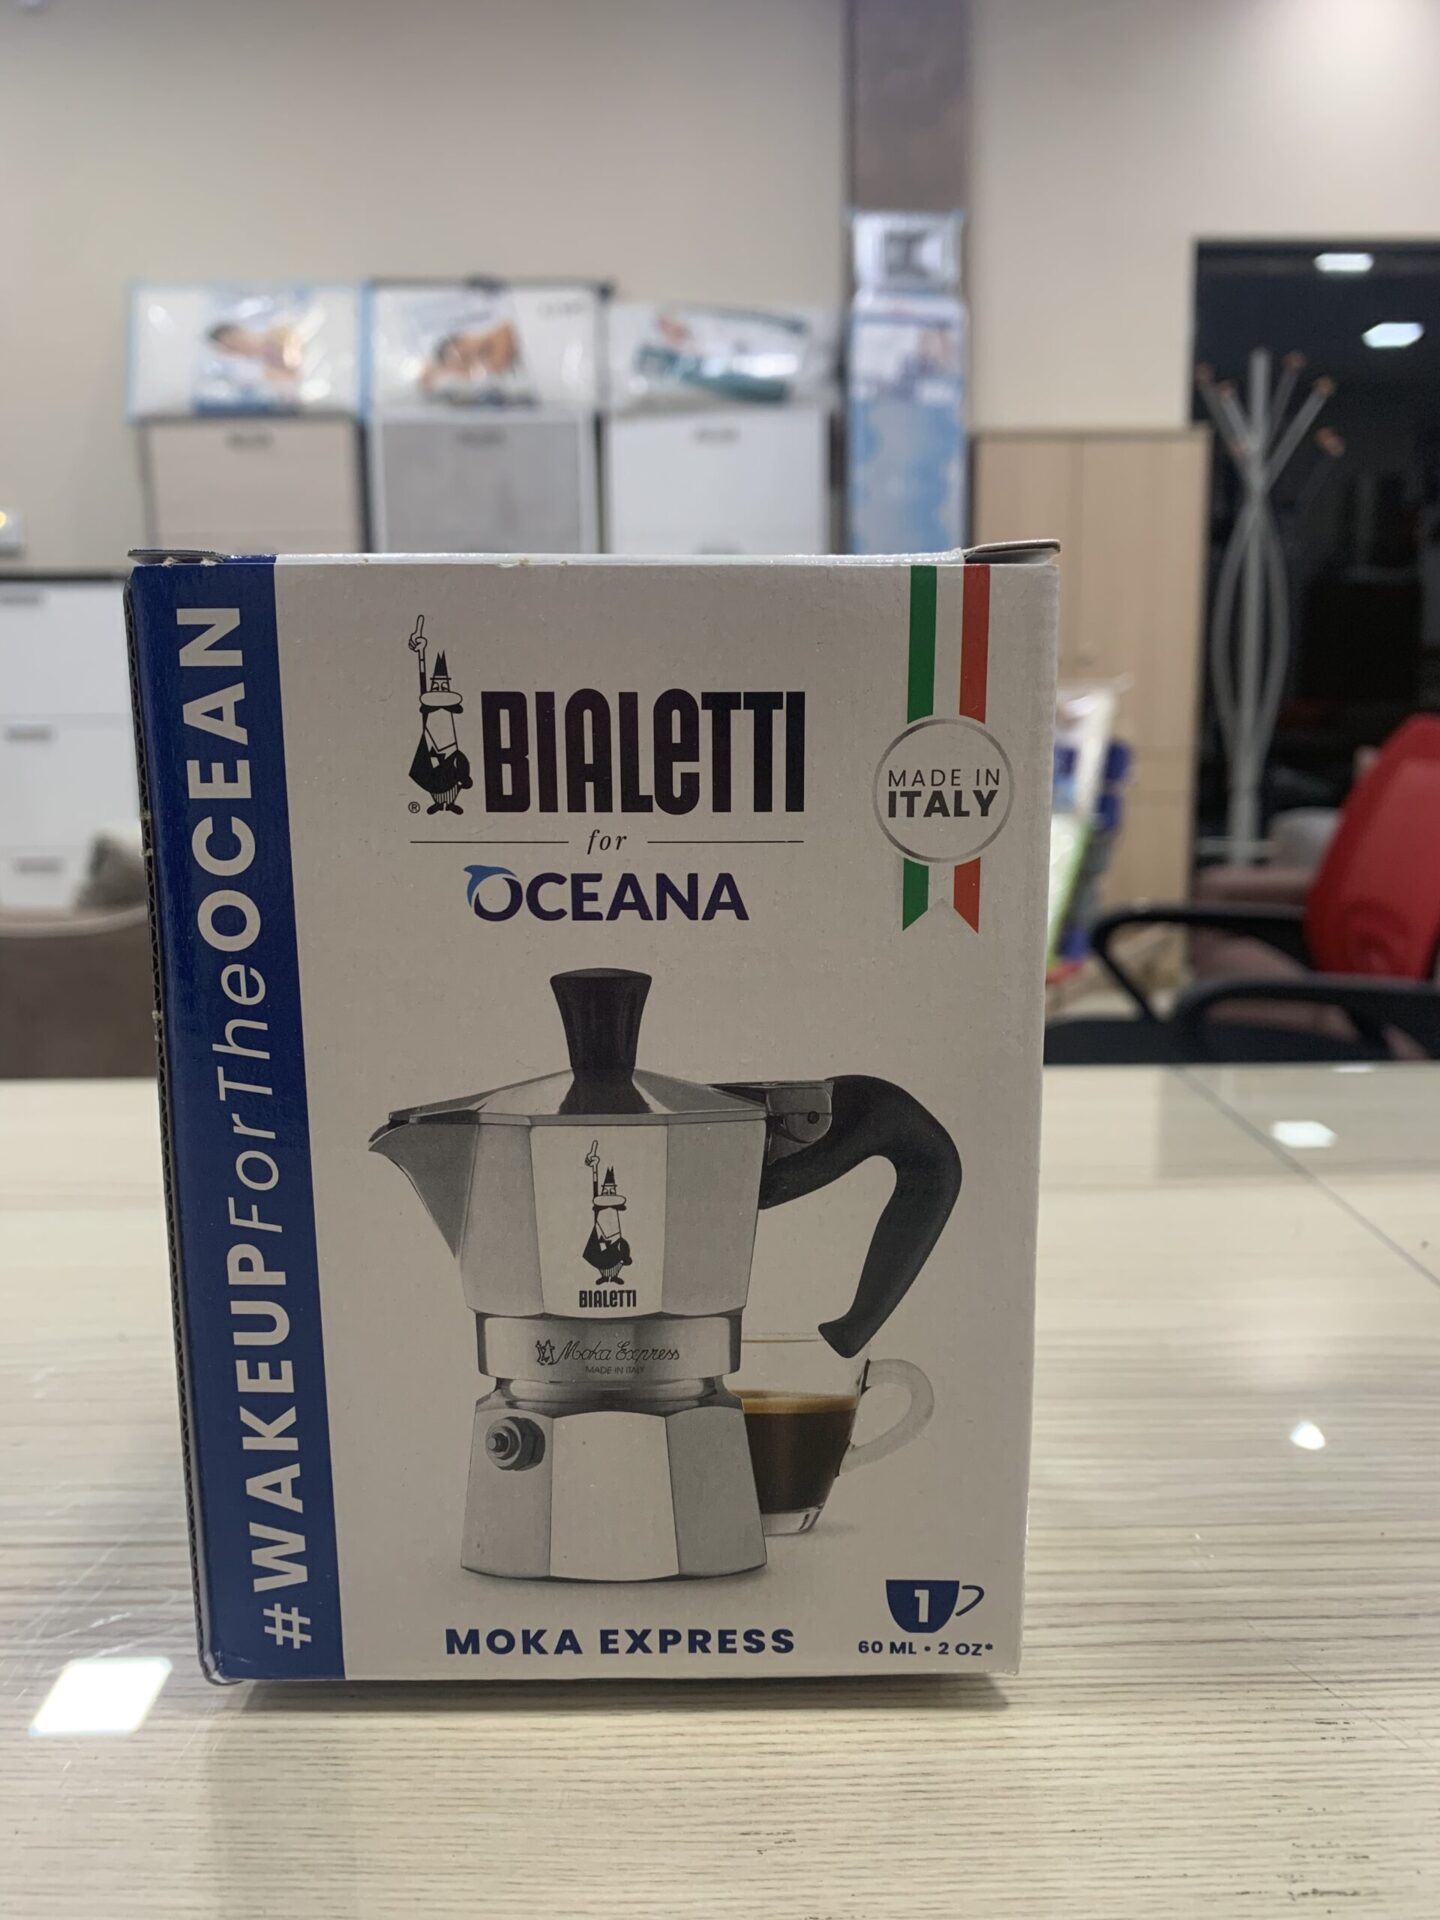 Moka bialetti 1 tazza - Elettrodomestici In vendita a Napoli